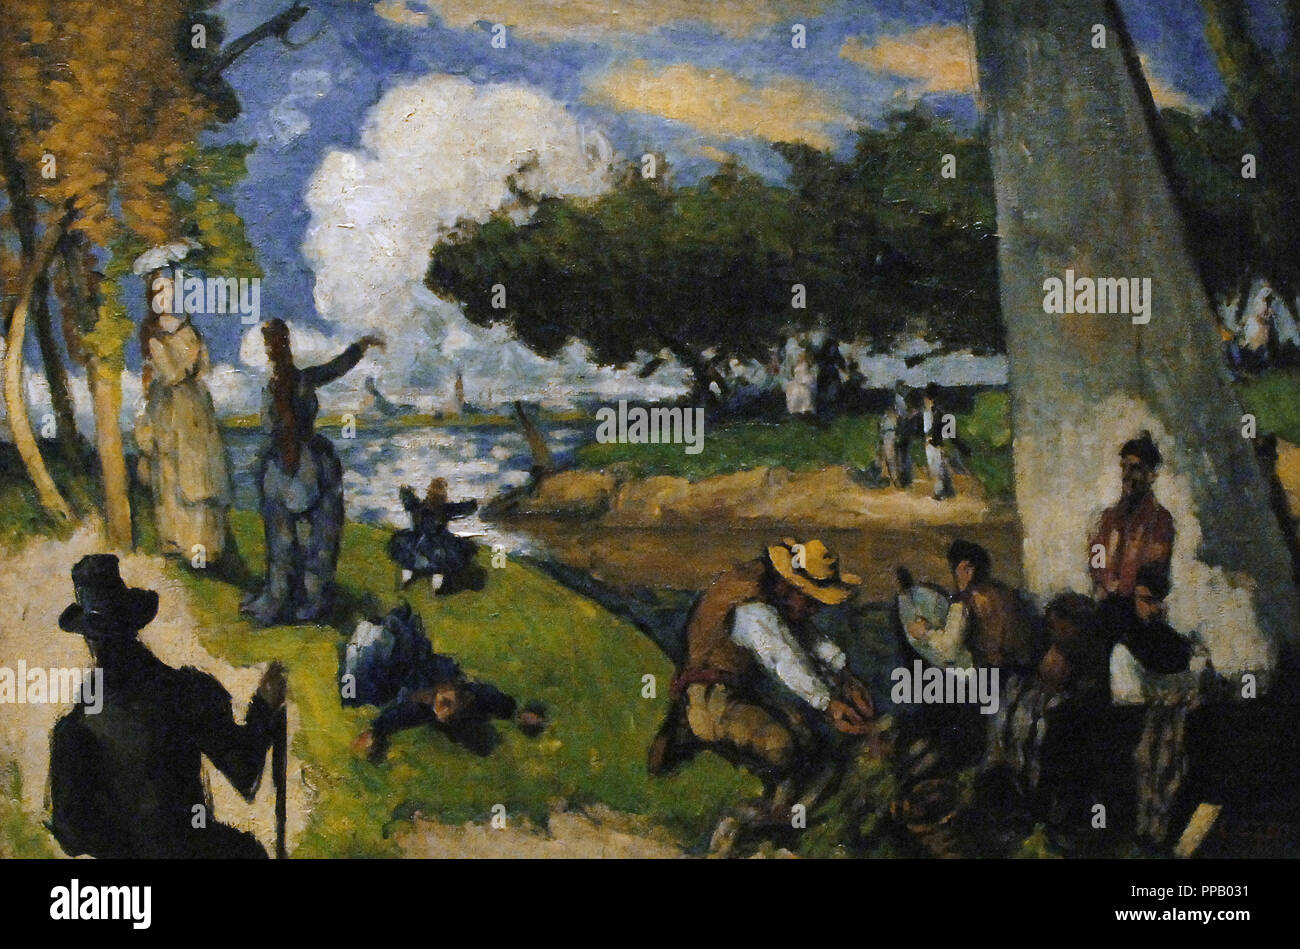 Paul Cezanne (1839-1906). French Post-Impressionist Painter. Die Fischer (fantastische Szene). Ca. 1875. Öl auf Leinwand. Metropolitan Museum. New York. In den Vereinigten Staaten. Stockfoto